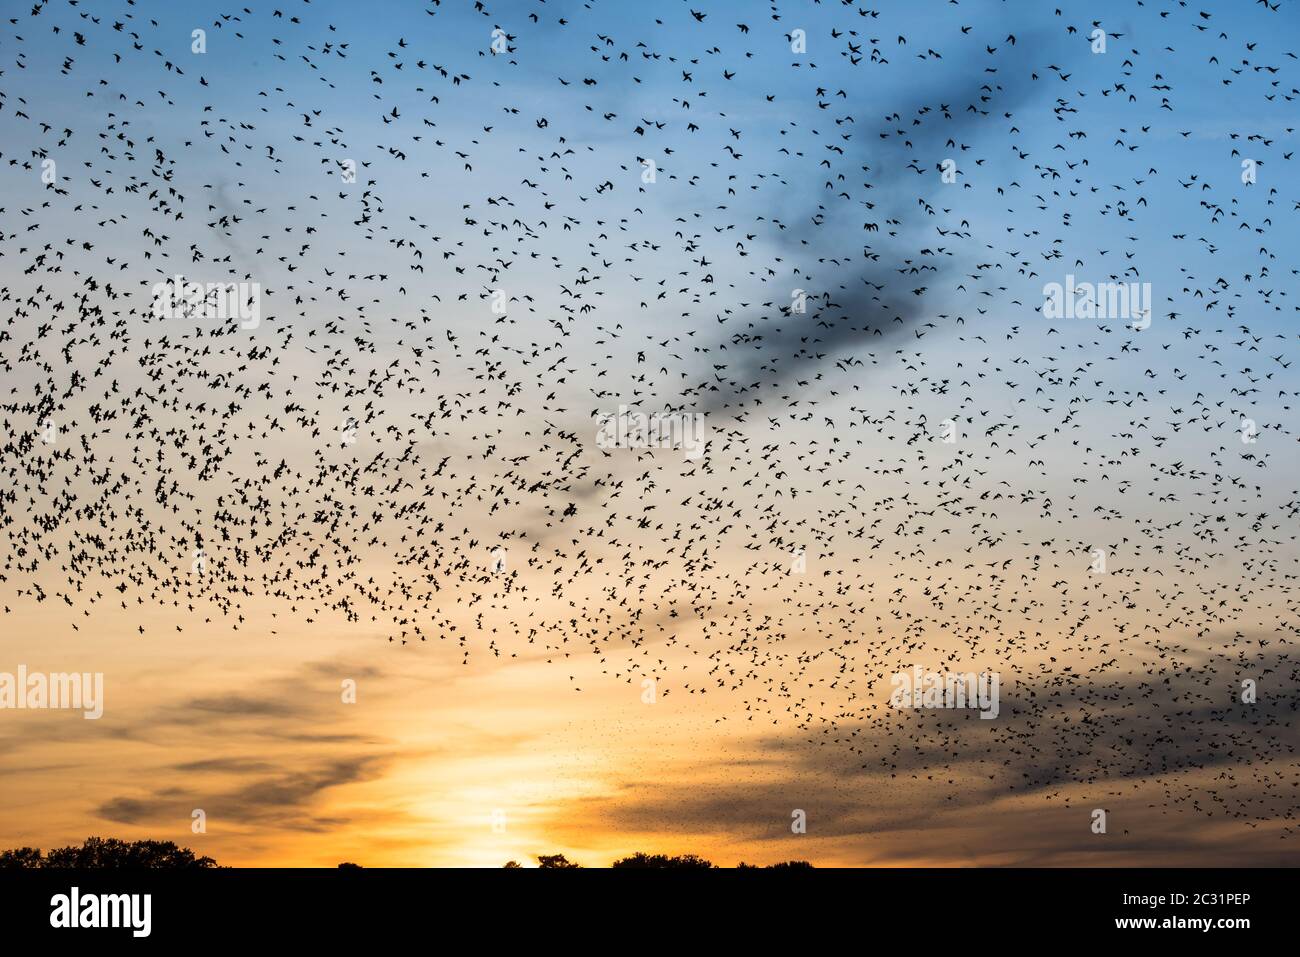 swarm of wild birds in autumn sun Stock Photo